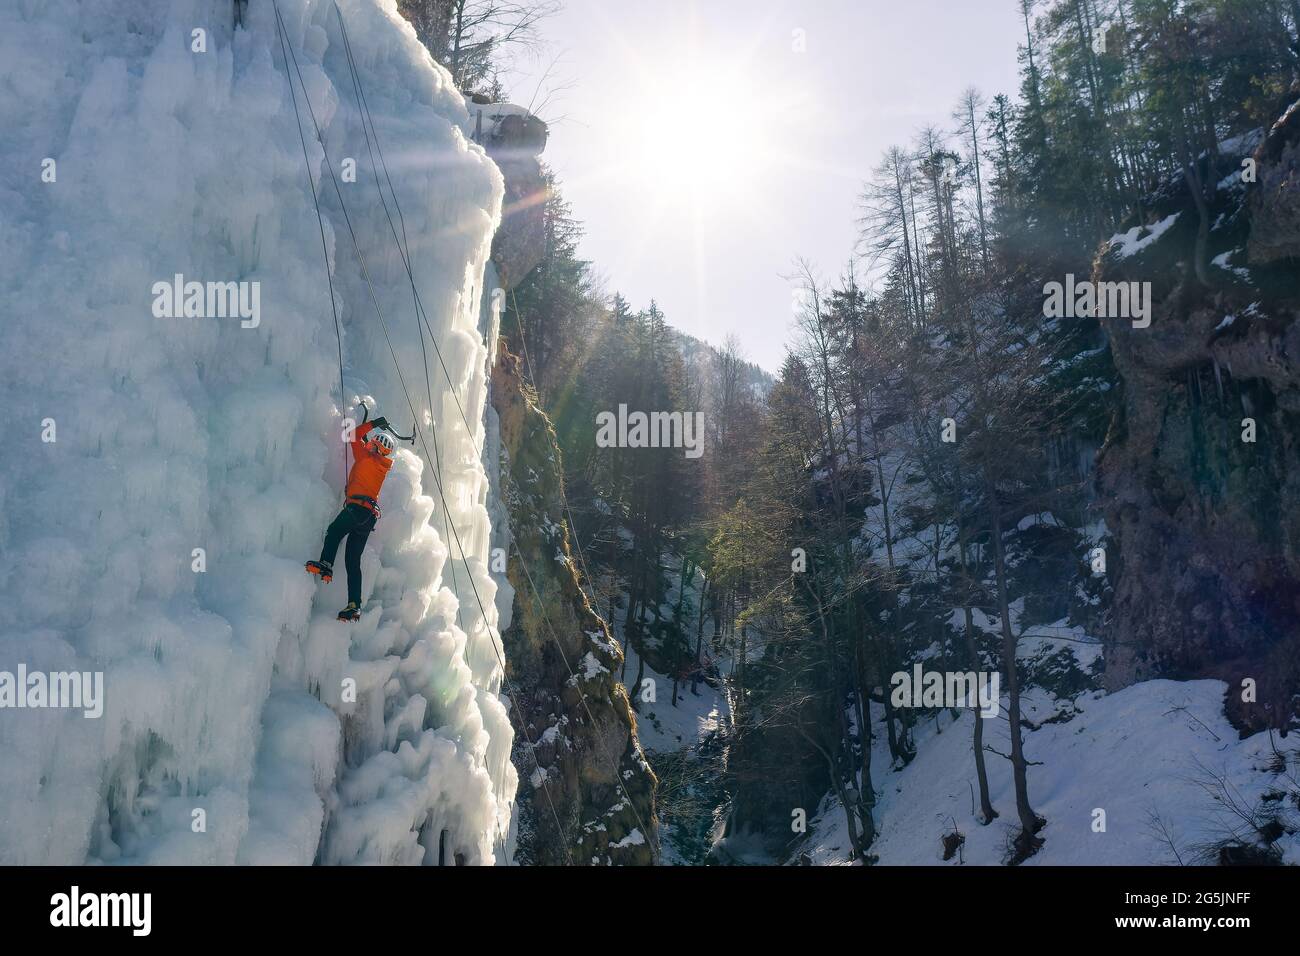 Mann klettert auf einem gefrorenen Wasserfall, indem er mit Steigeisen ins Eis tritt und auf das Eis drückt Stockfoto